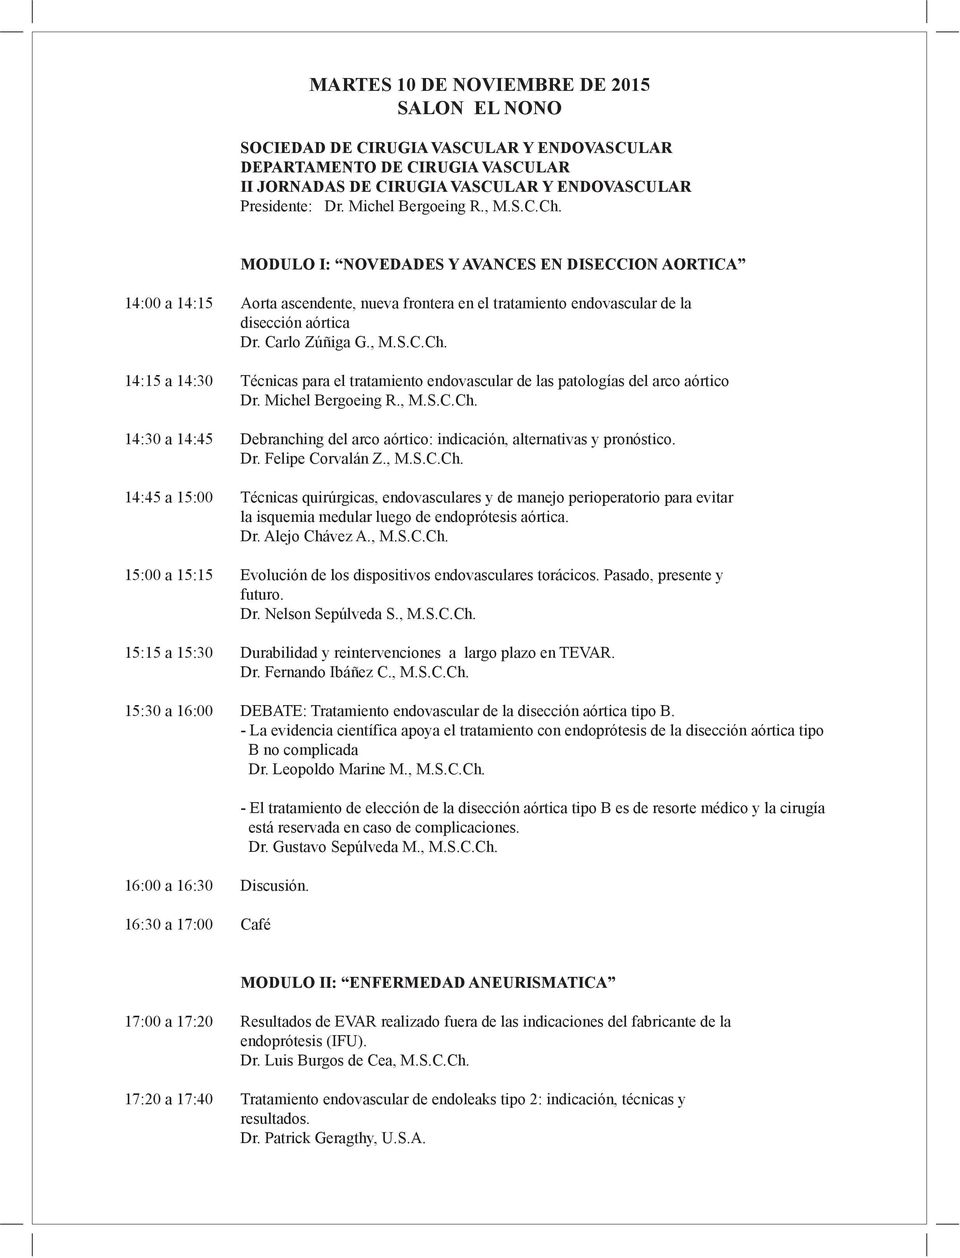 Carlo Zúñiga G., M.S.C.Ch. 14:15 a 14:30 Técnicas para el tratamiento endovascular de las patologías del arco aórtico Dr. Michel Bergoeing R., M.S.C.Ch. 14:30 a 14:45 Debranching del arco aórtico: indicación, alternativas y pronóstico.